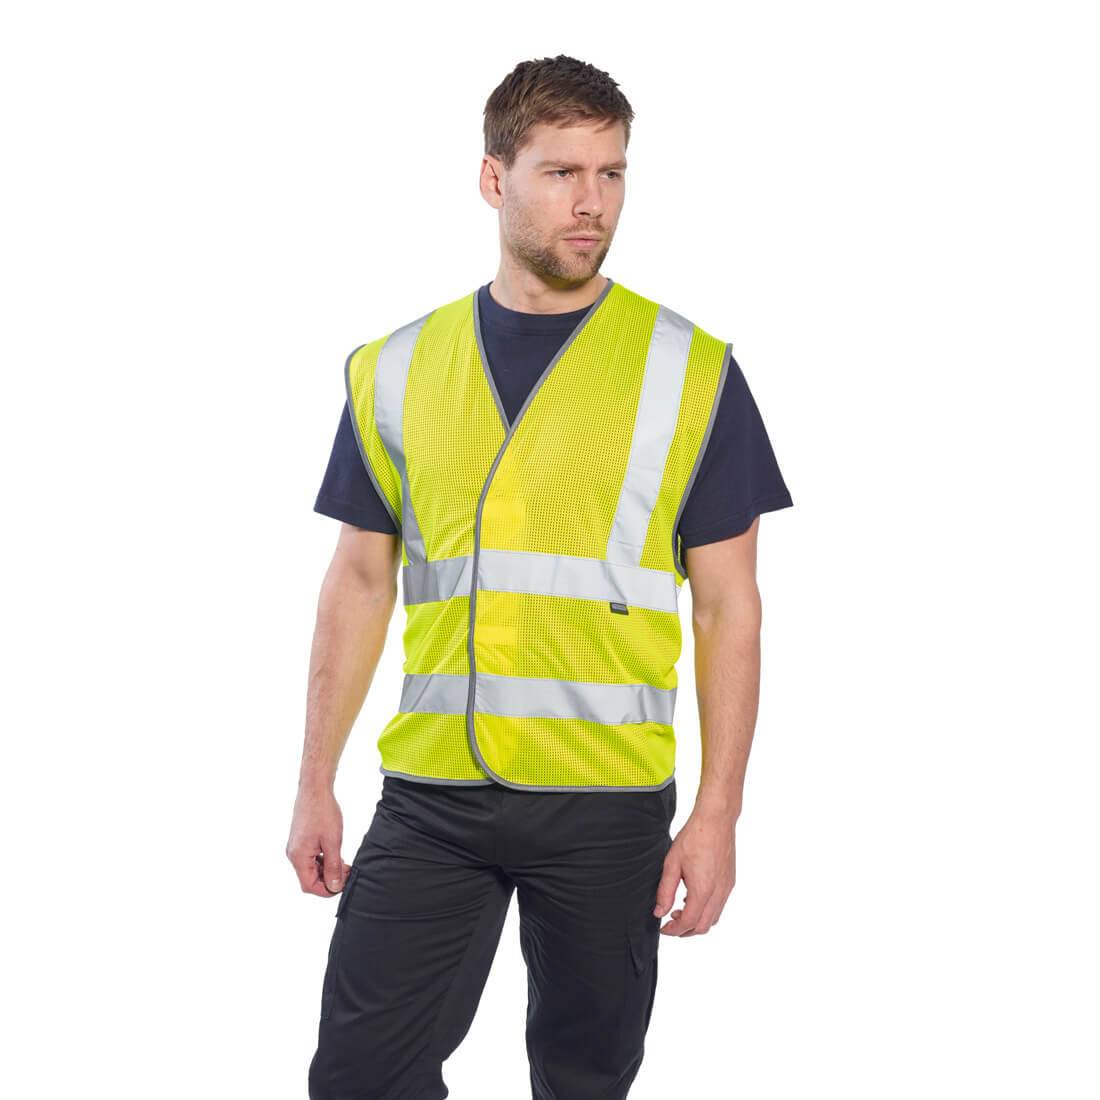 MeshAir Band & Brace Vest - Safetywear